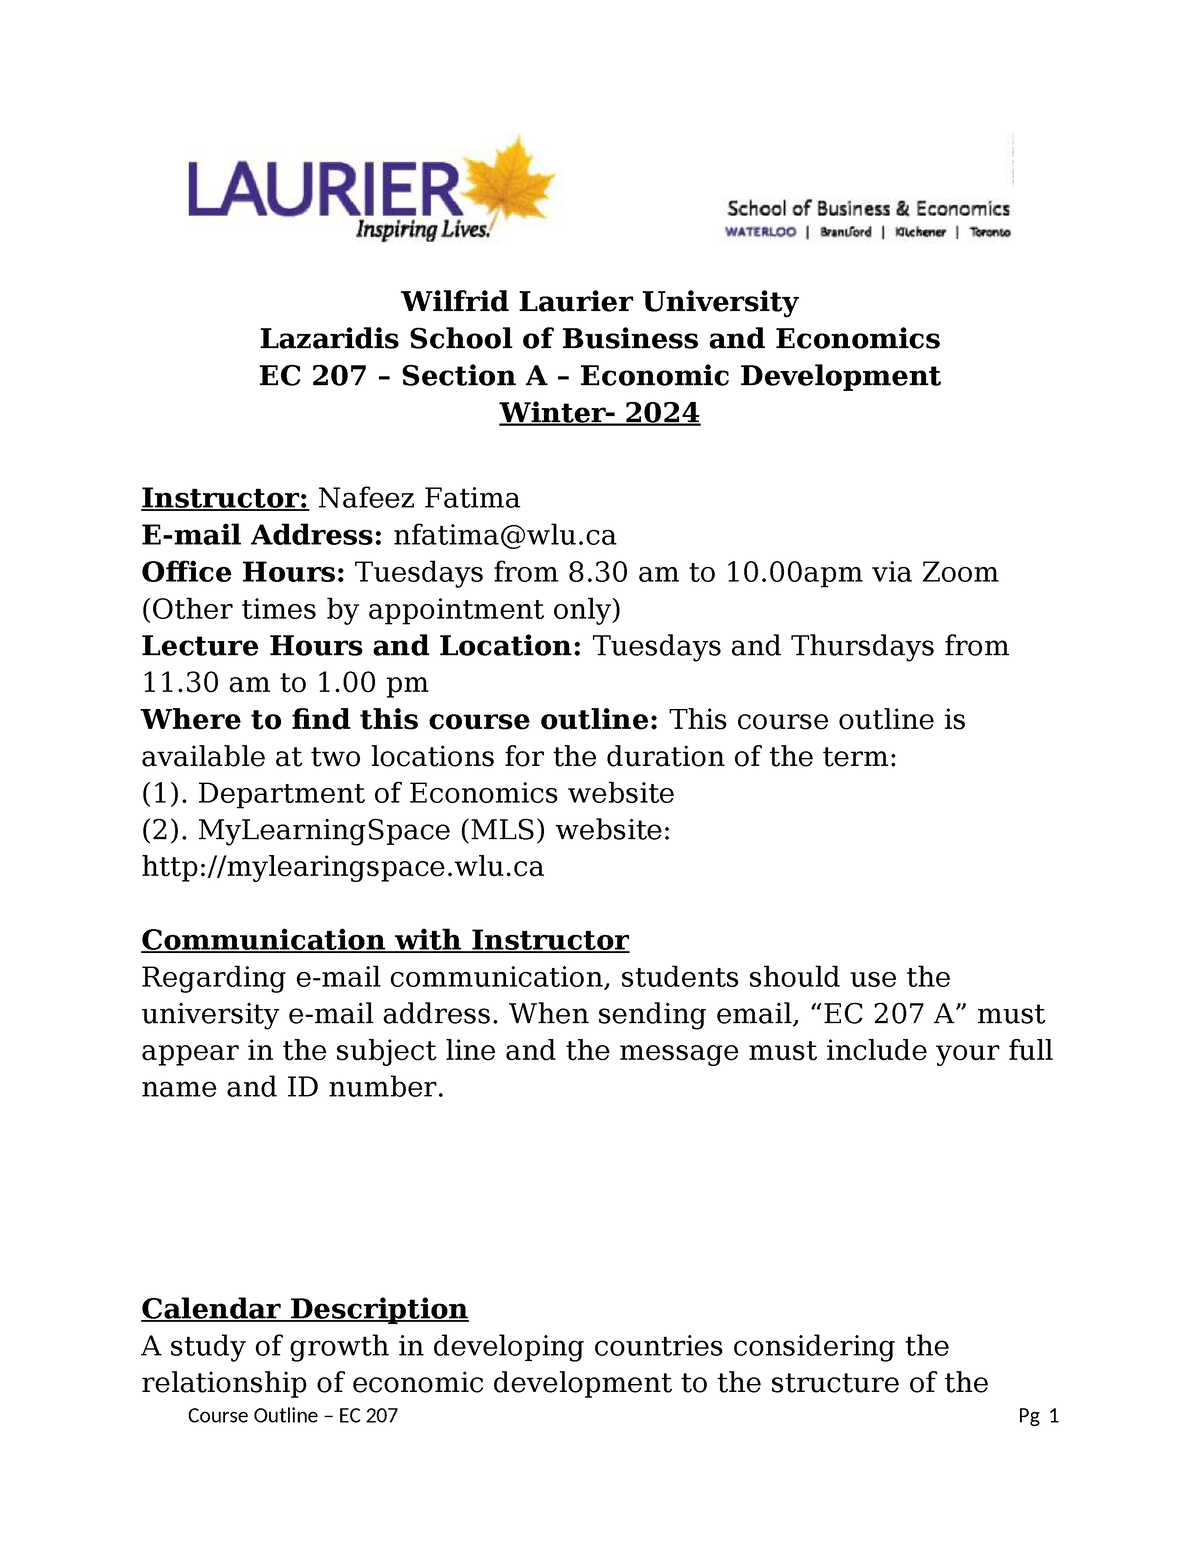 Course Outline EC 207 Winter 2024 Wilfrid Laurier University